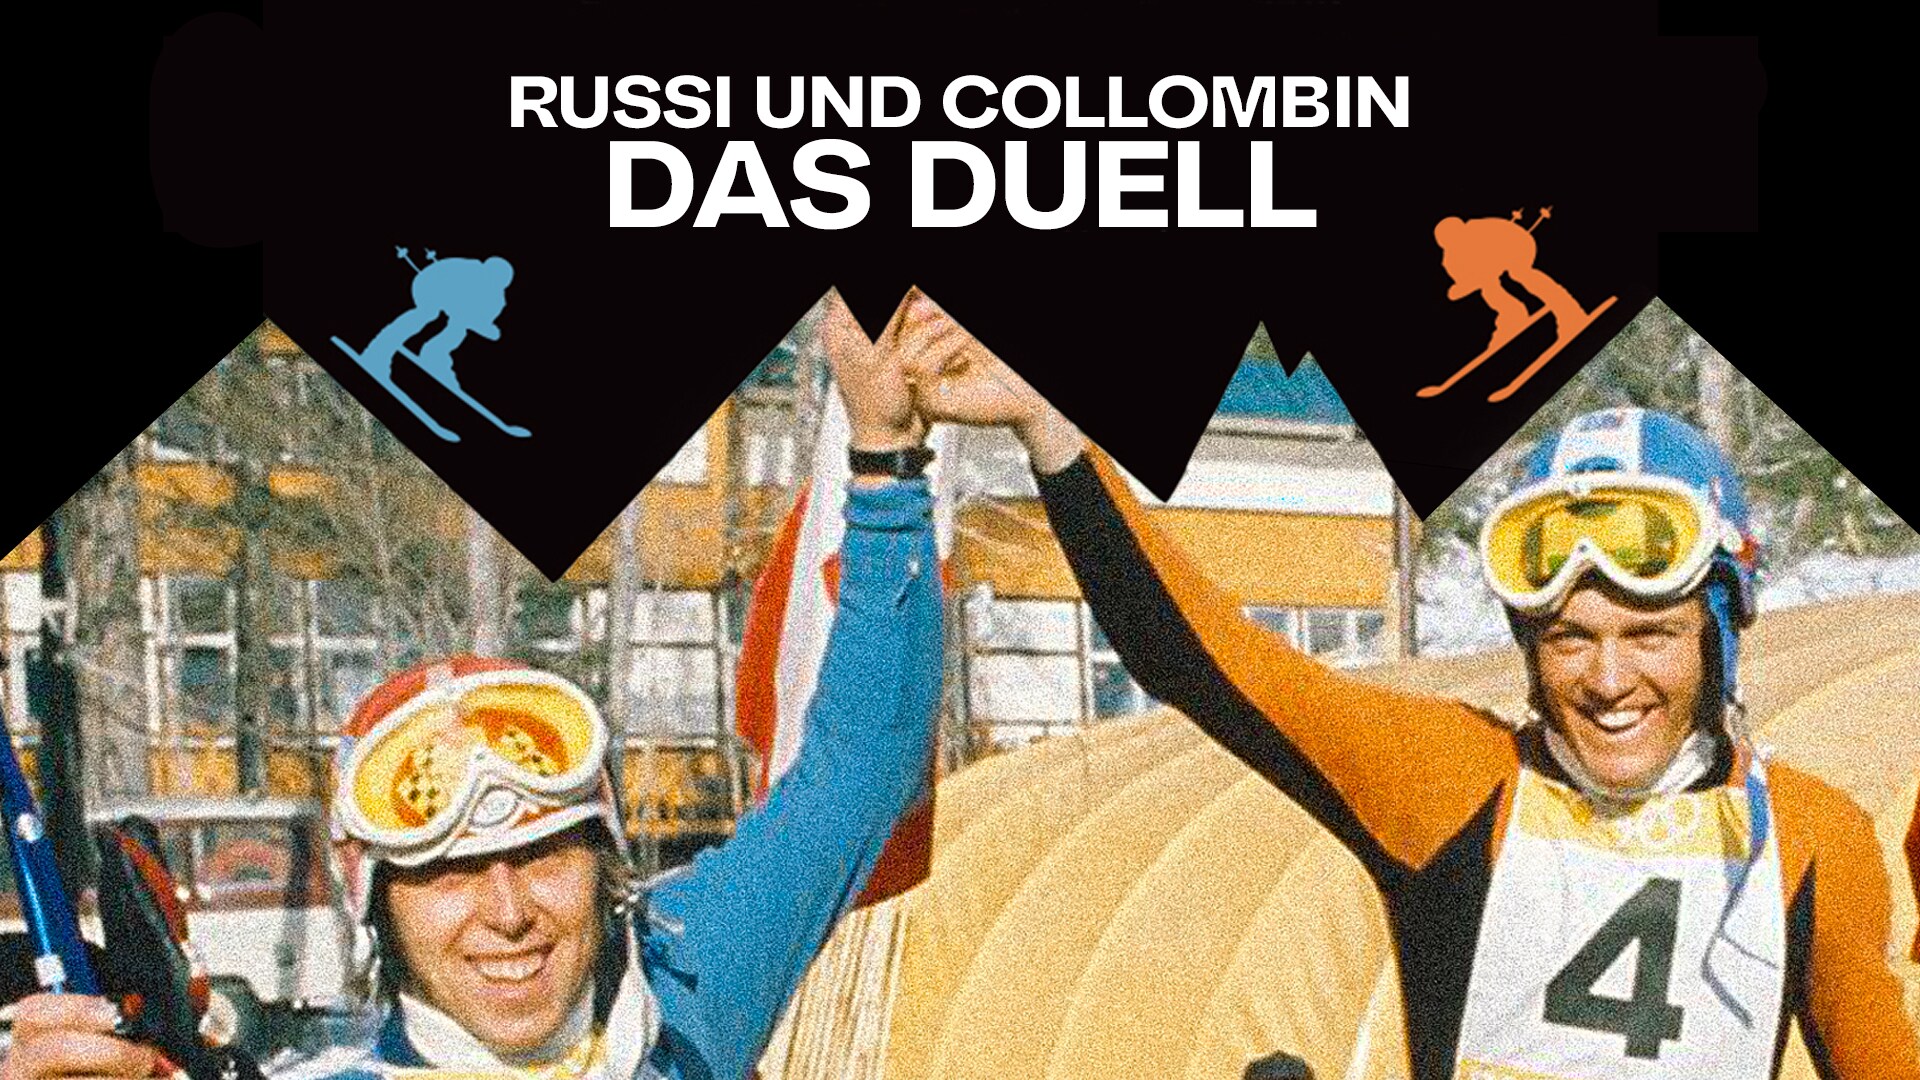 Russi und Collombin - Das Duell